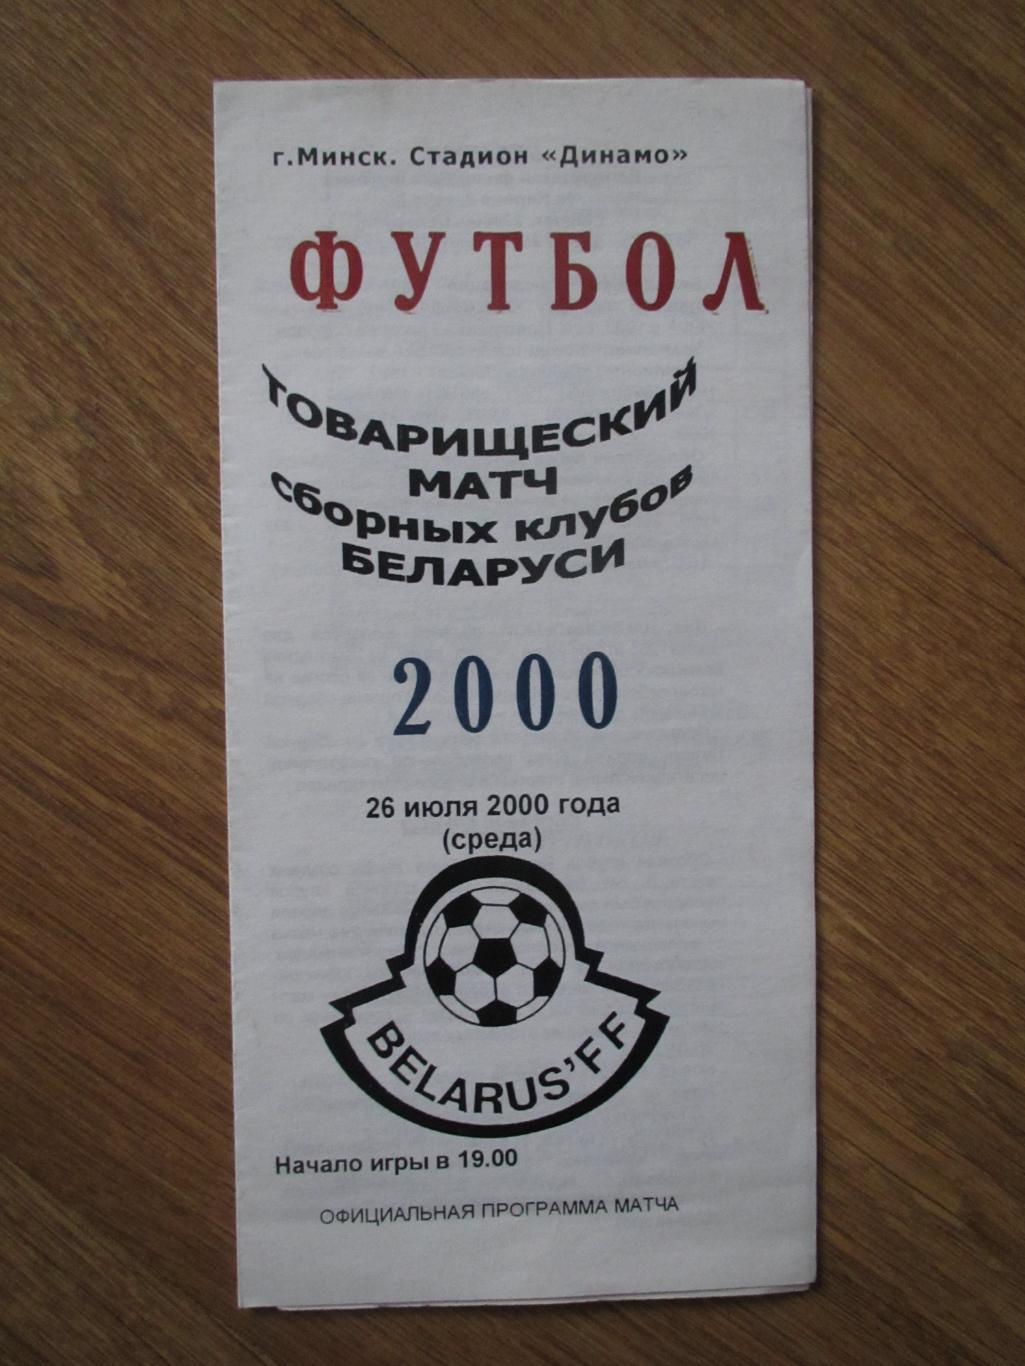 Товарищеский матч сборных клубов Беларуси 26.06.2000